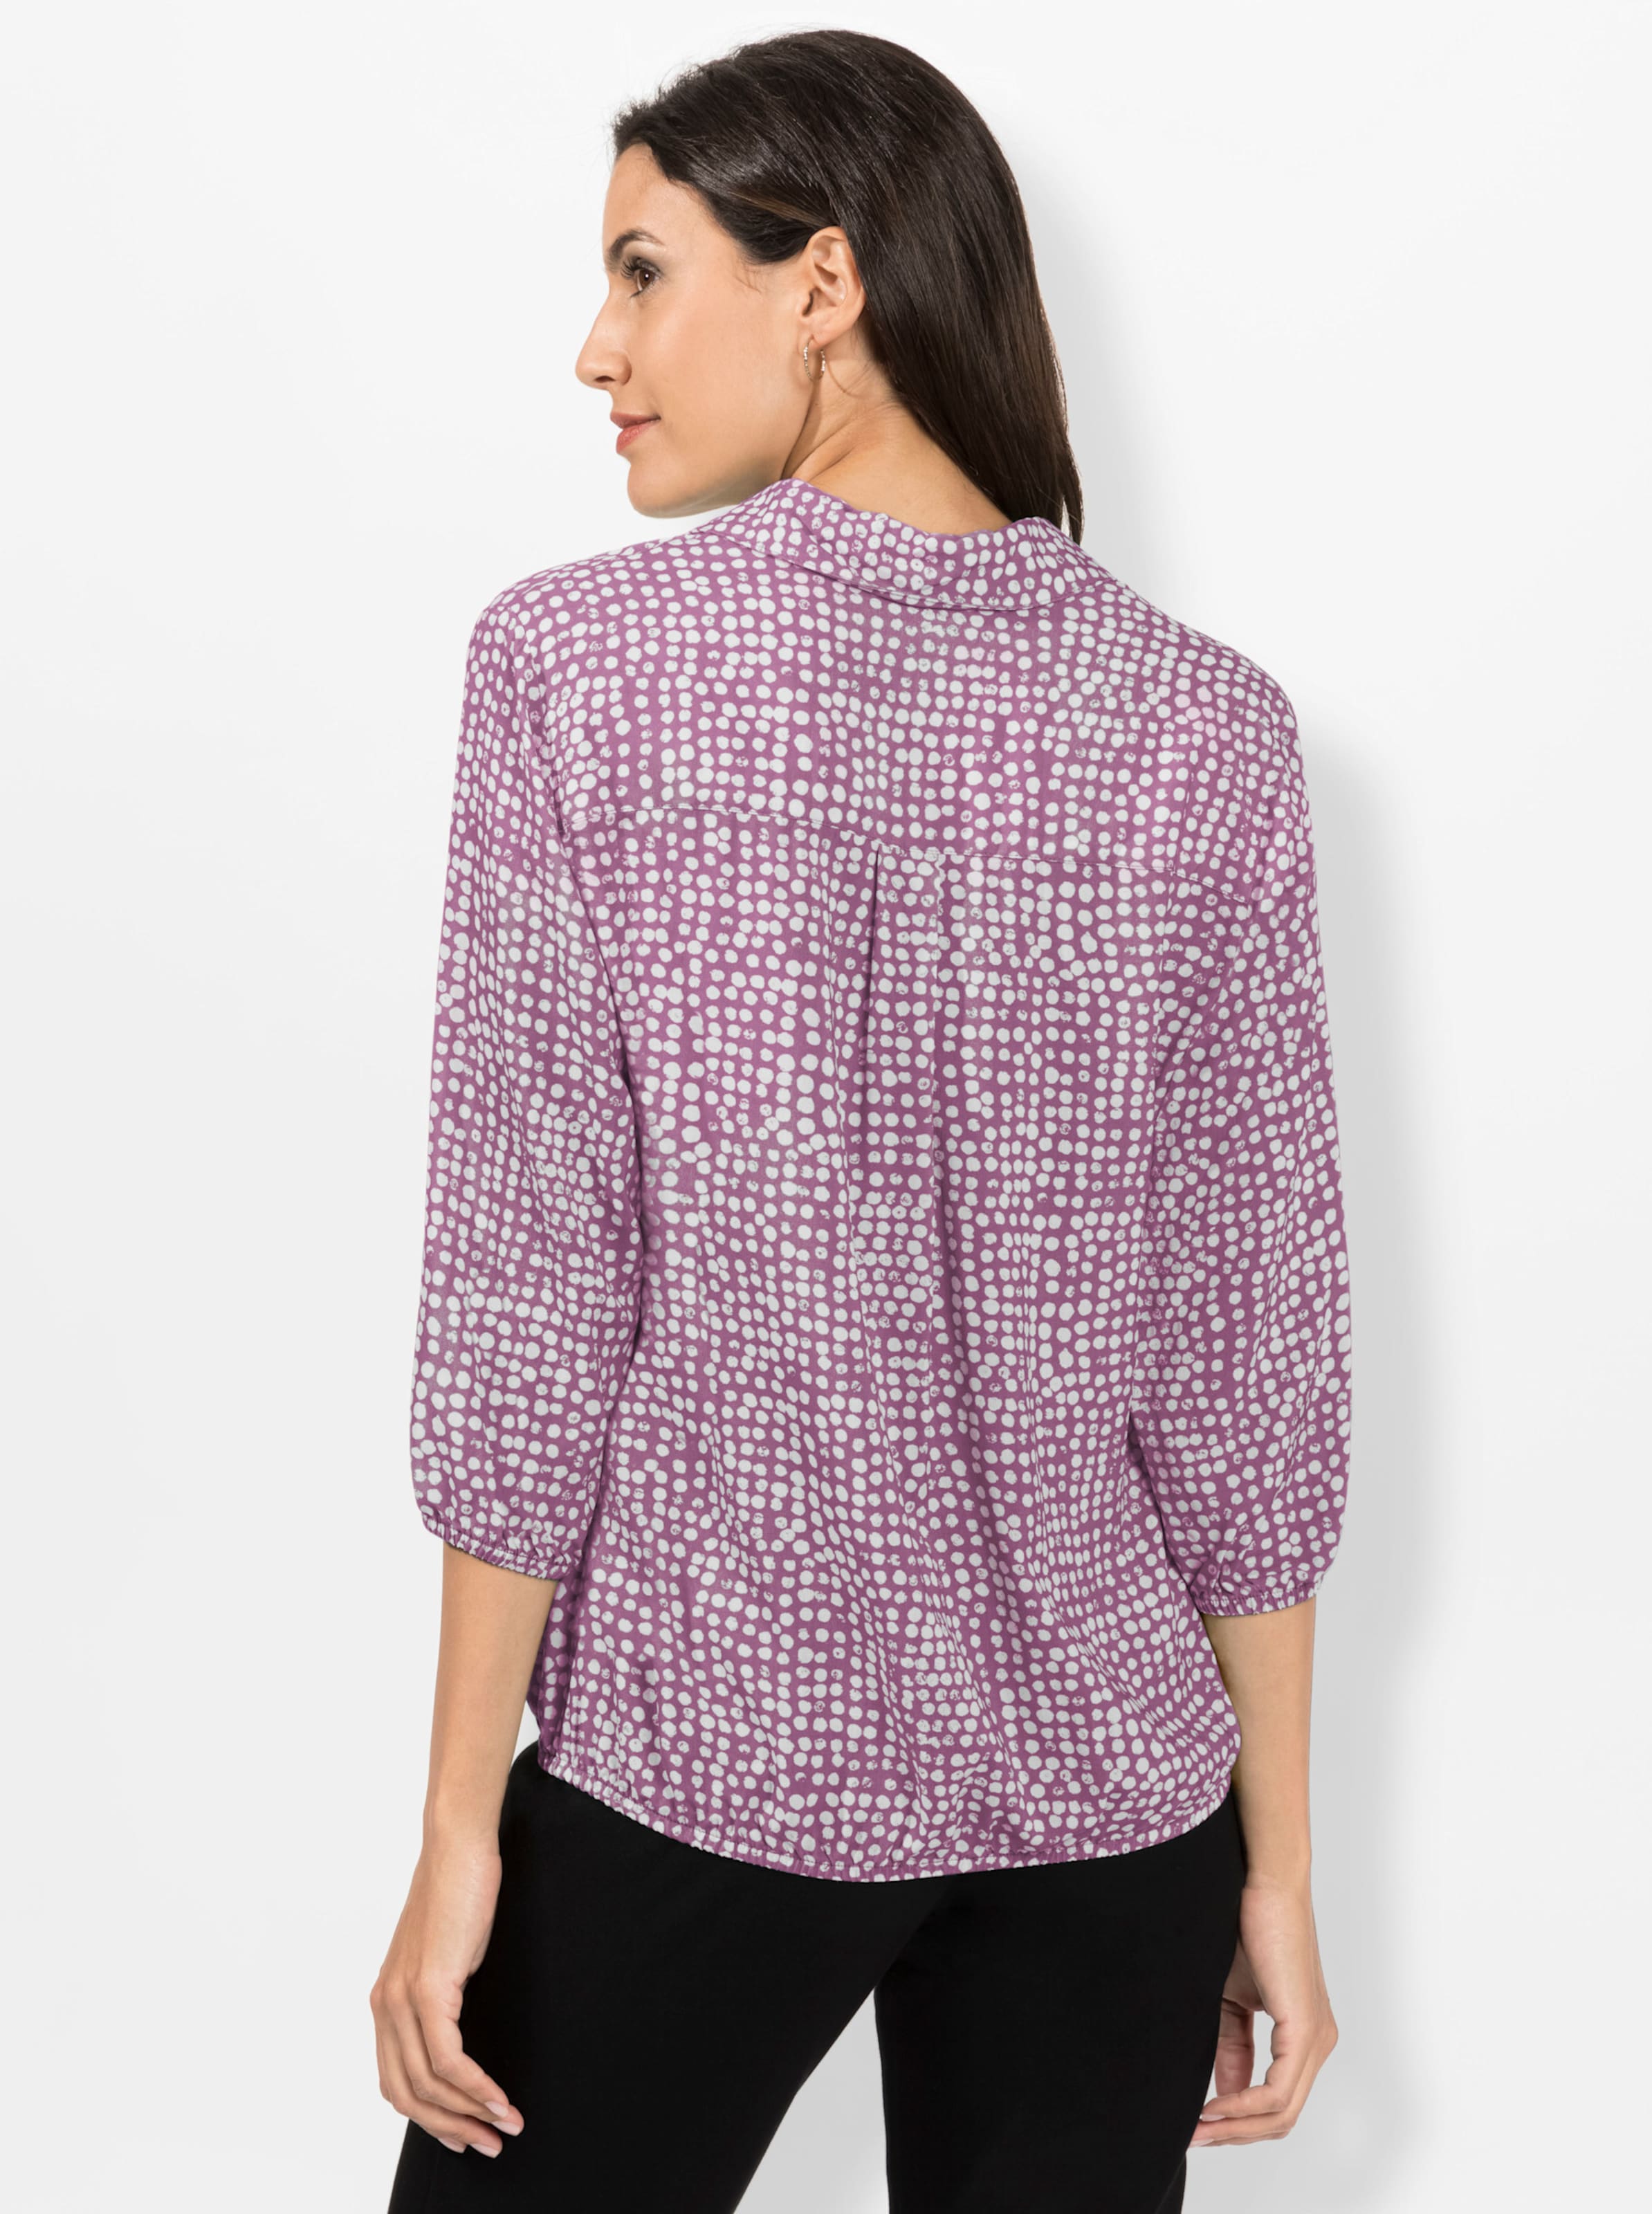 MINI MINI günstig Kaufen-Bluse in violett-weiß-bedruckt von heine. Bluse in violett-weiß-bedruckt von heine <![CDATA[Minimal-Muster sind ein Muss! Mit dieser allover bedruckten Bluse sind Sie immer schick angezogen. Mit offenem Hemdkragen und schimmernden Knöpfen an de